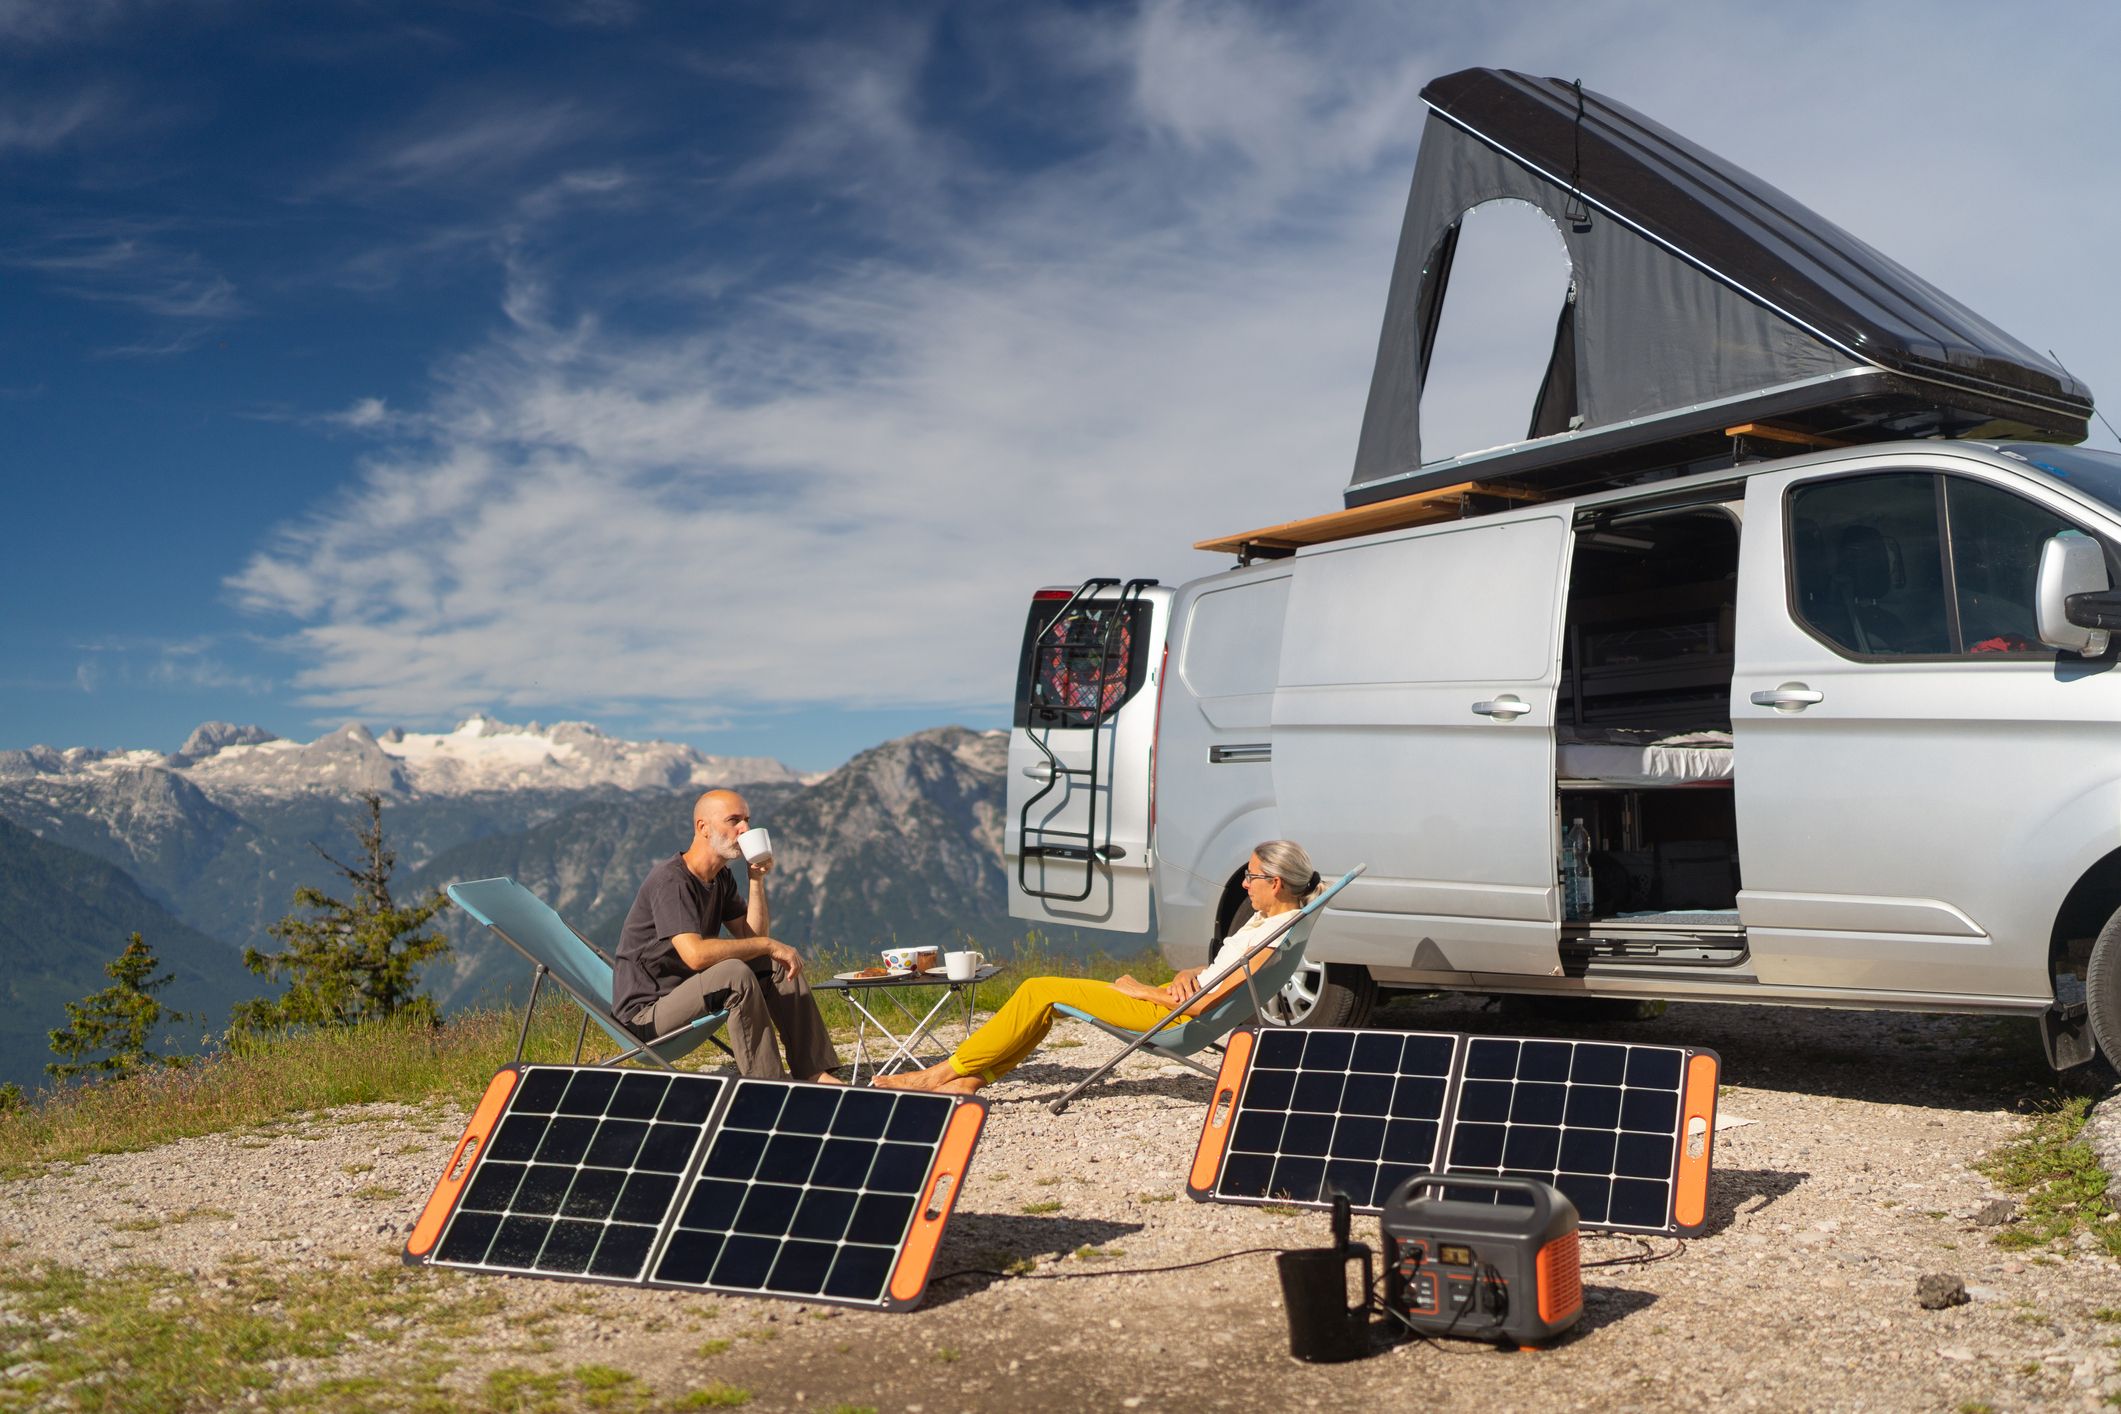 Si viajas mucho en autocaravana, los paneles solares son una buena idea